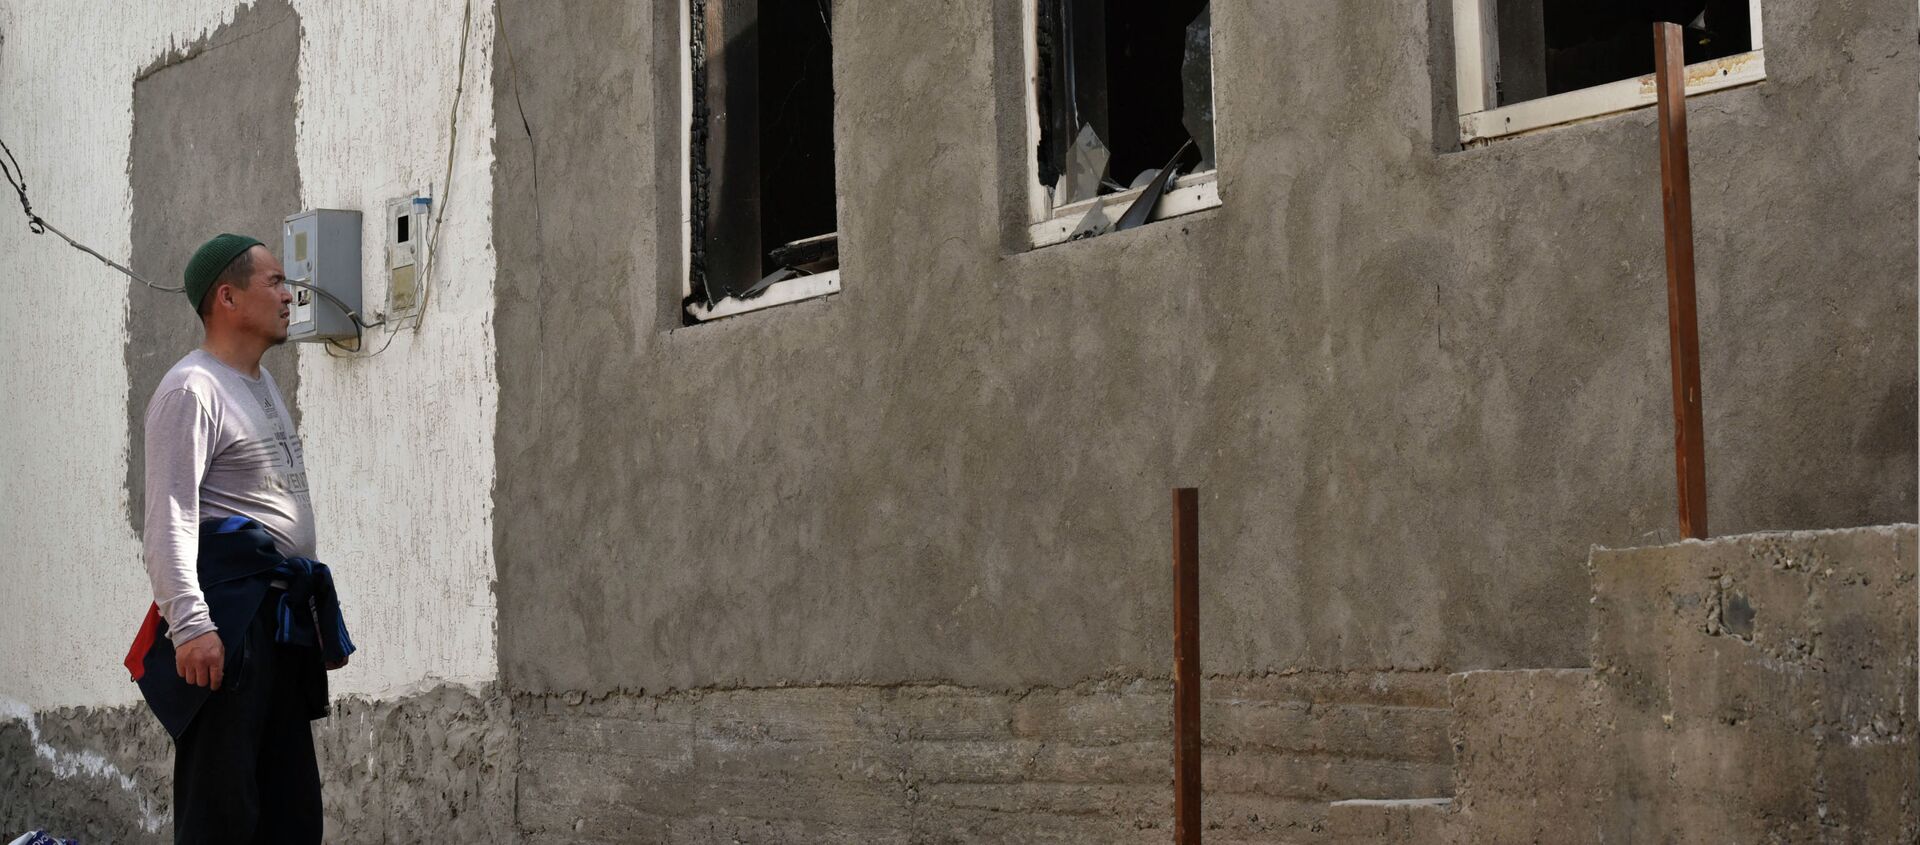 Последствия военного конфликта в приграничном селе Максат - Sputnik Кыргызстан, 1920, 02.05.2021